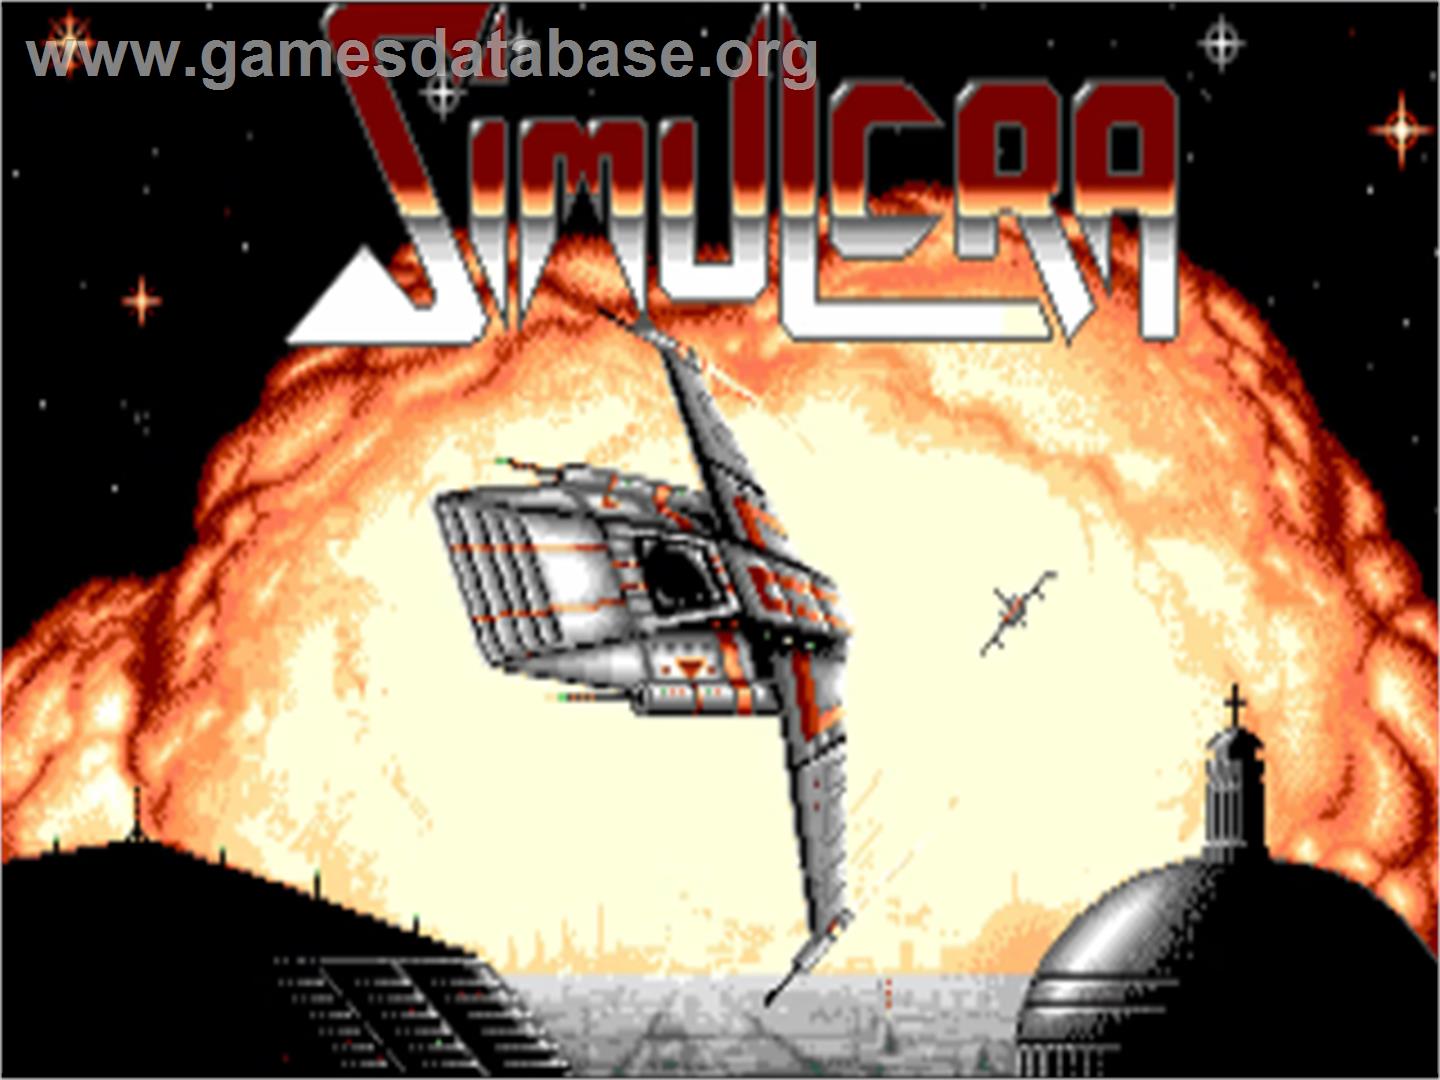 Simulcra - Commodore Amiga - Artwork - Title Screen